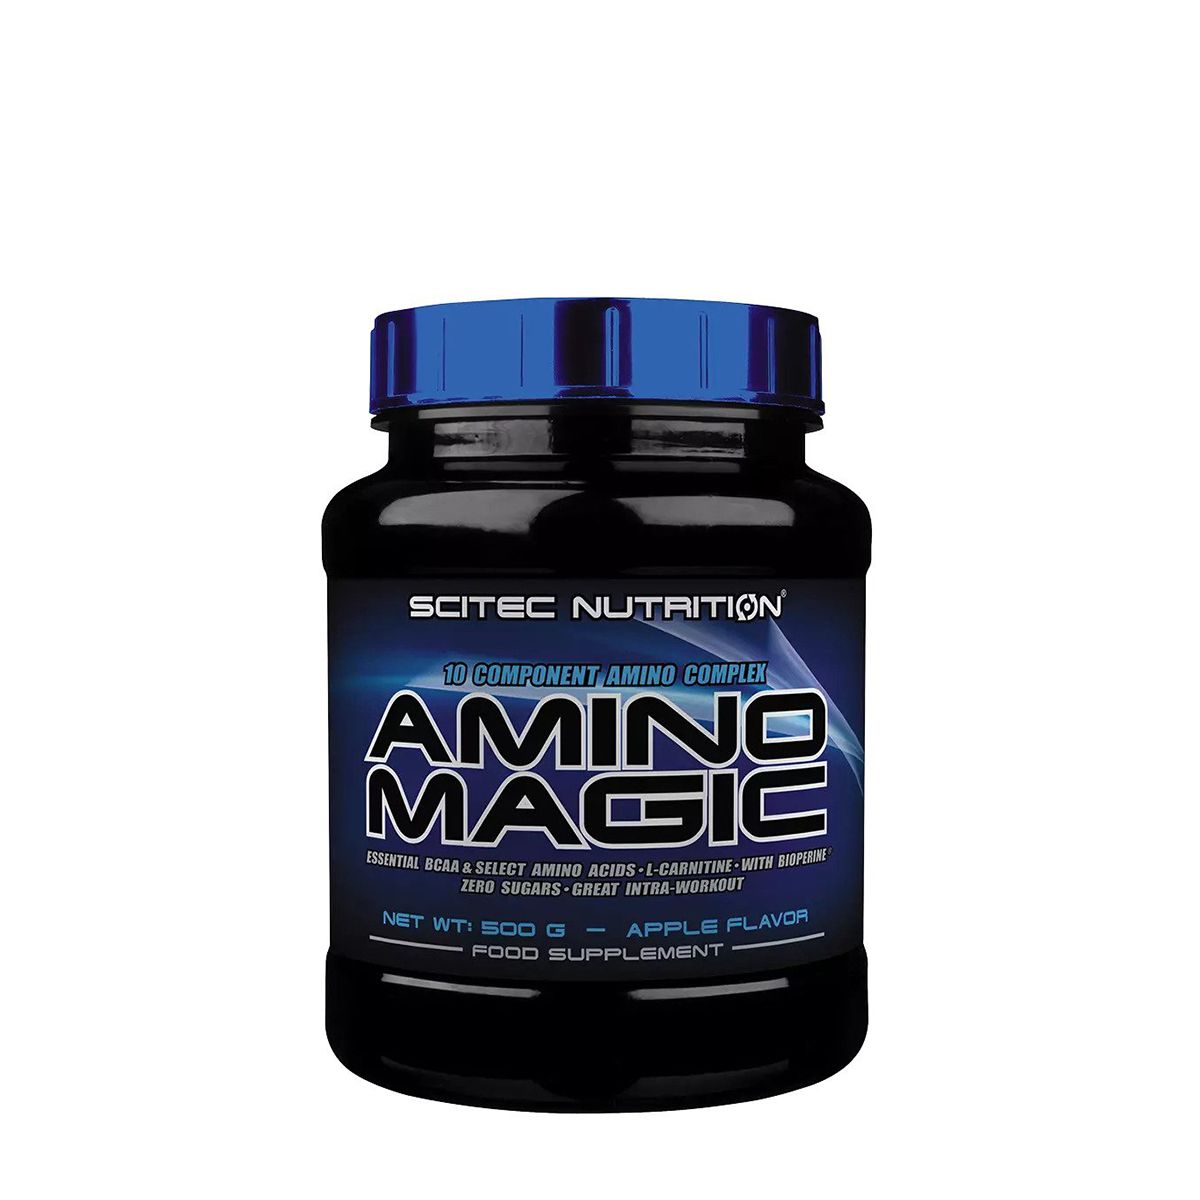 SCITEC NUTRITION - AMINO MAGIC - 10 COMPONENT AMINO COMPLEX - 500 G